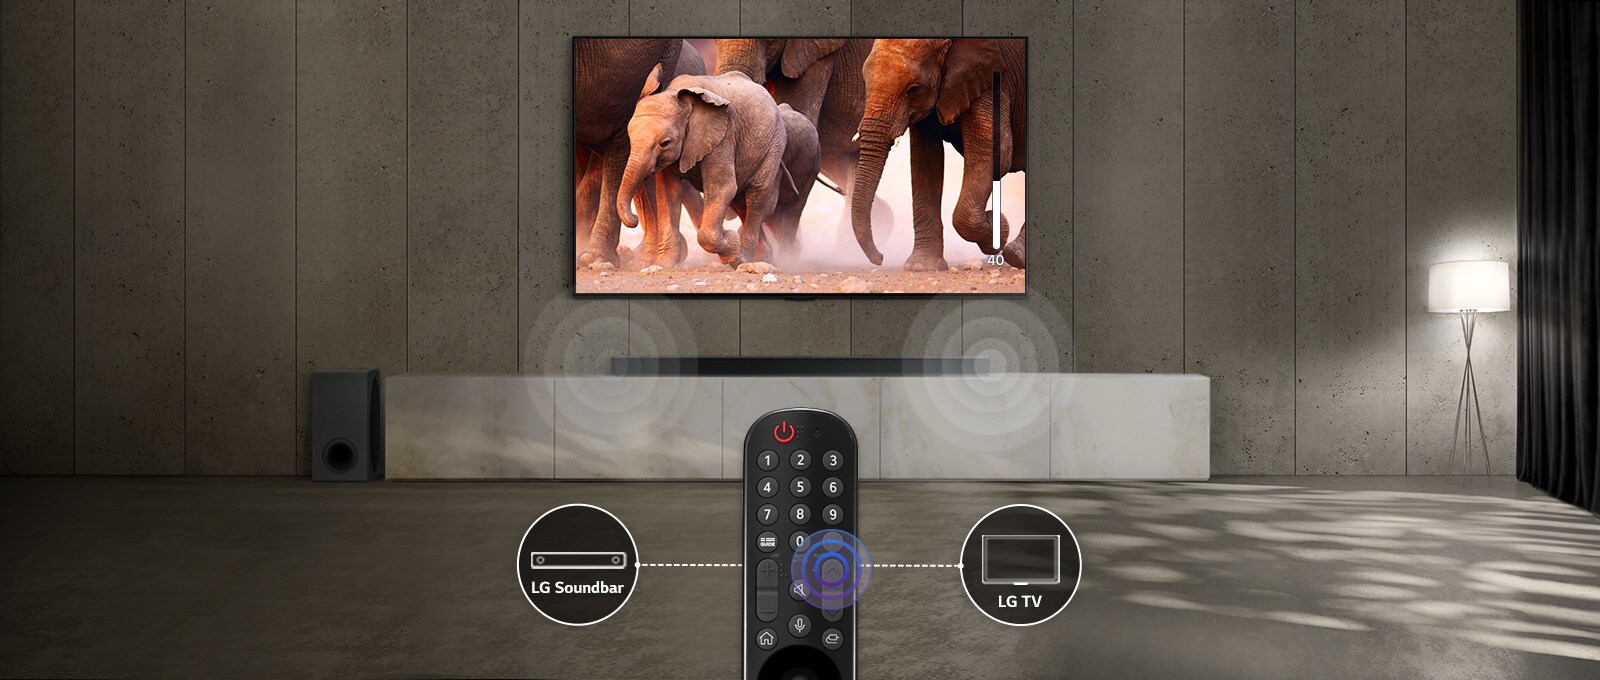 Televizorul într-o cameră cu lumini subtile afișează imagini cu elefanți aflați în trecere Și există un efect de sunet pe bara de sunet de sub televizor. În partea de jos a imaginii, există o telecomandă pentru televizor, iar bara de sunet și pictograma televizorului sunt conectate în partea din stânga și din dreapta telecomenzii.